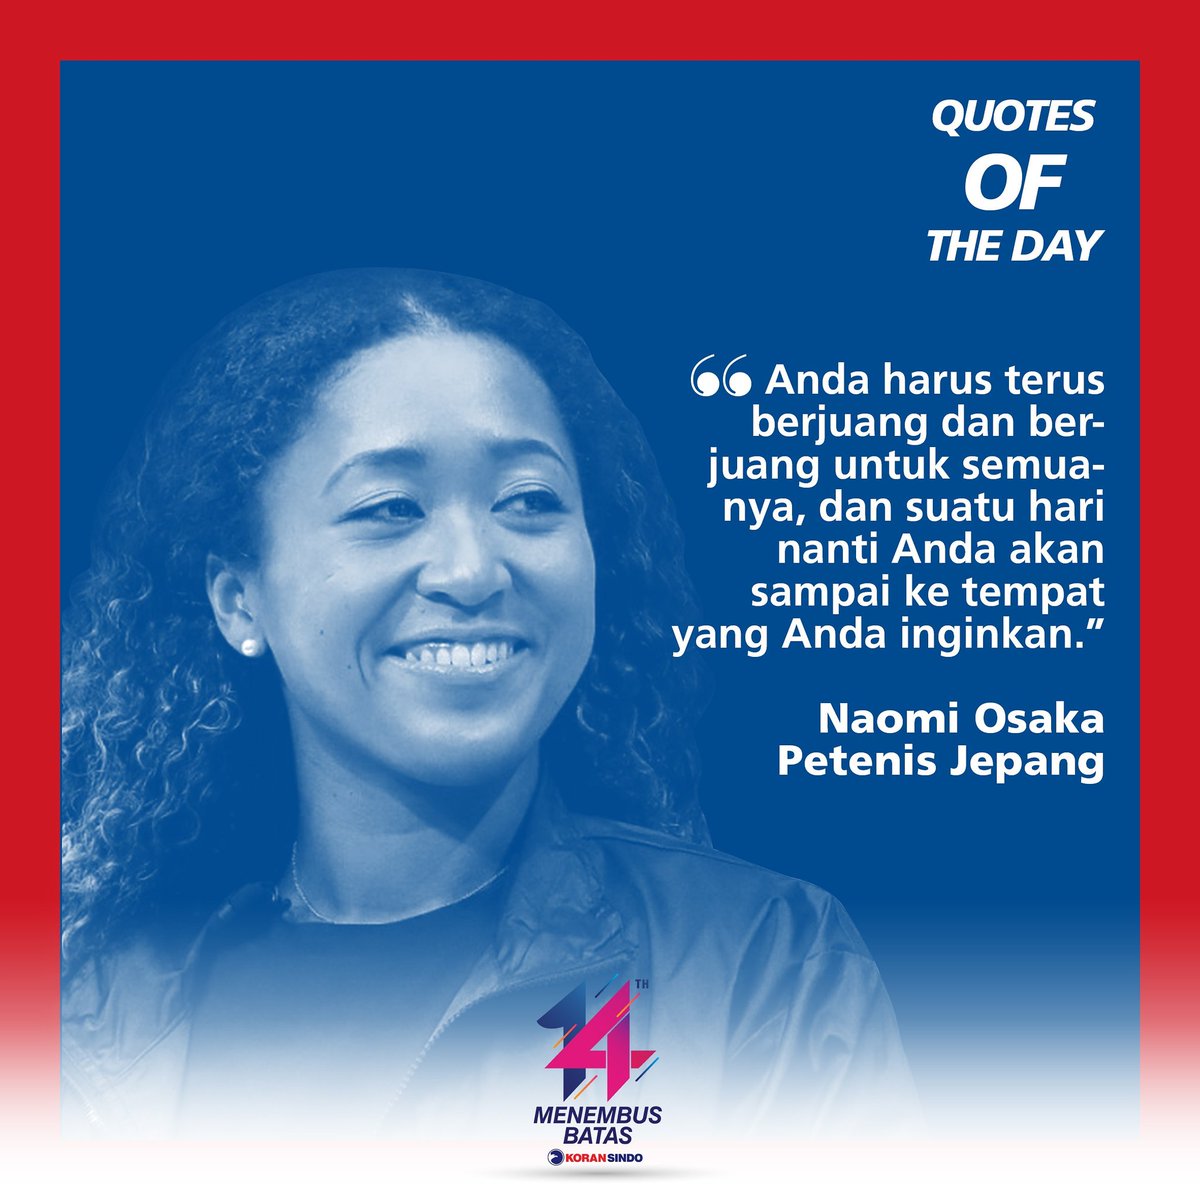 'Anda harus terus berjuang dan berjuang untuk semuanya, dan suatu hari nanti Anda akan sampai ke tempat yang Anda inginkan.'  -Naomi Osaka, Petenis Dunia

#sindoquote #JumatBerkah